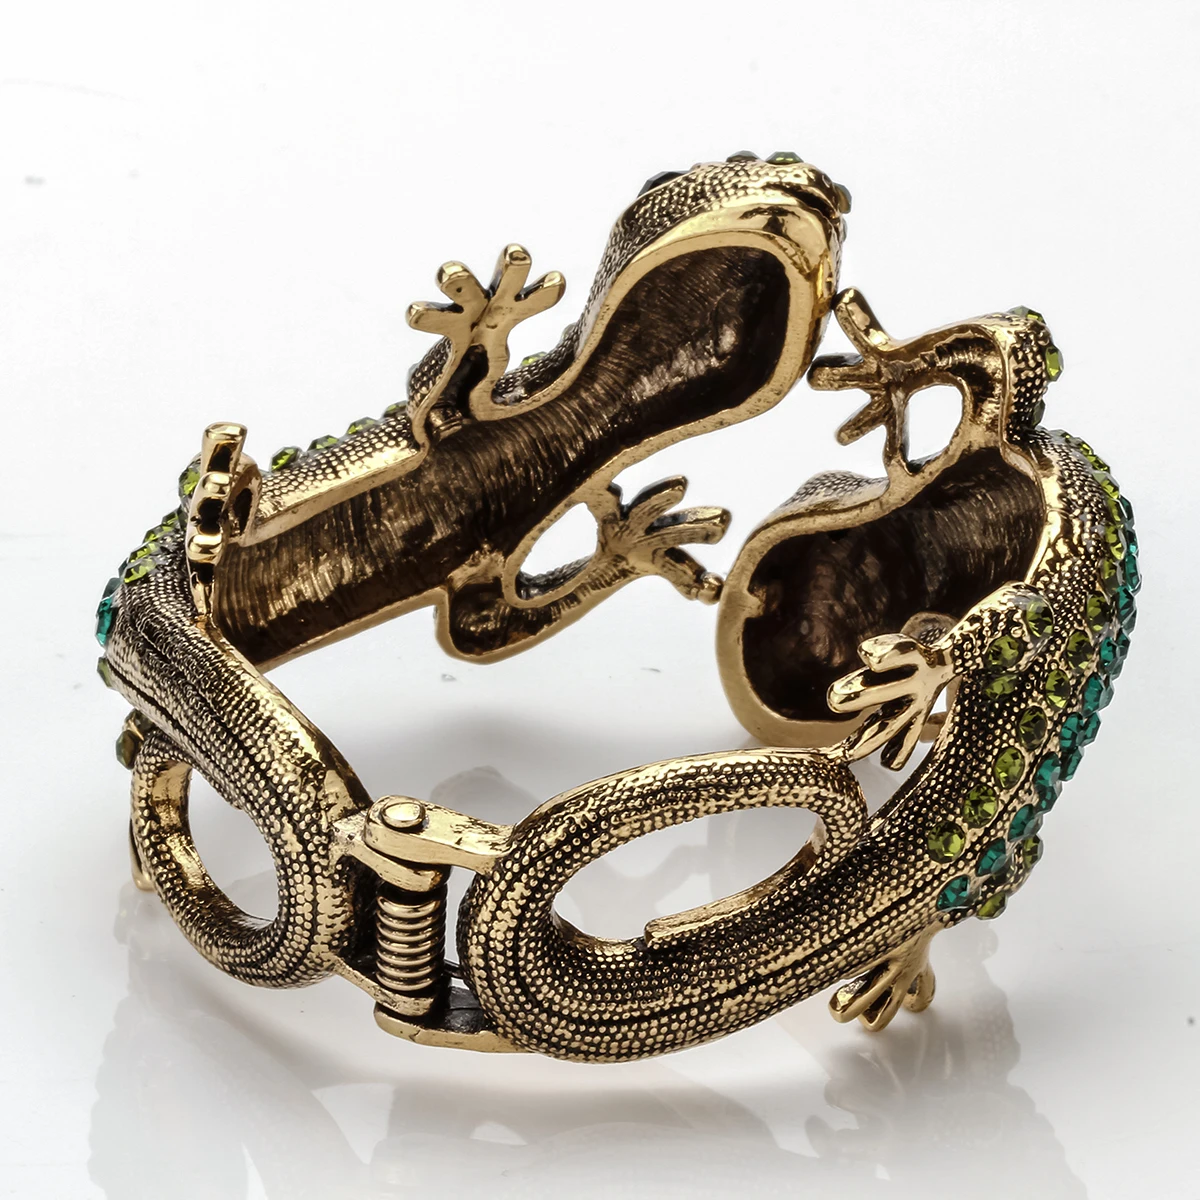 YACQ Gecko браслет Античный Золотой Серебряный цвет животное Bling Кристалл Ювелирные изделия Подарки для женщин ее девочек дропшиппинг A08